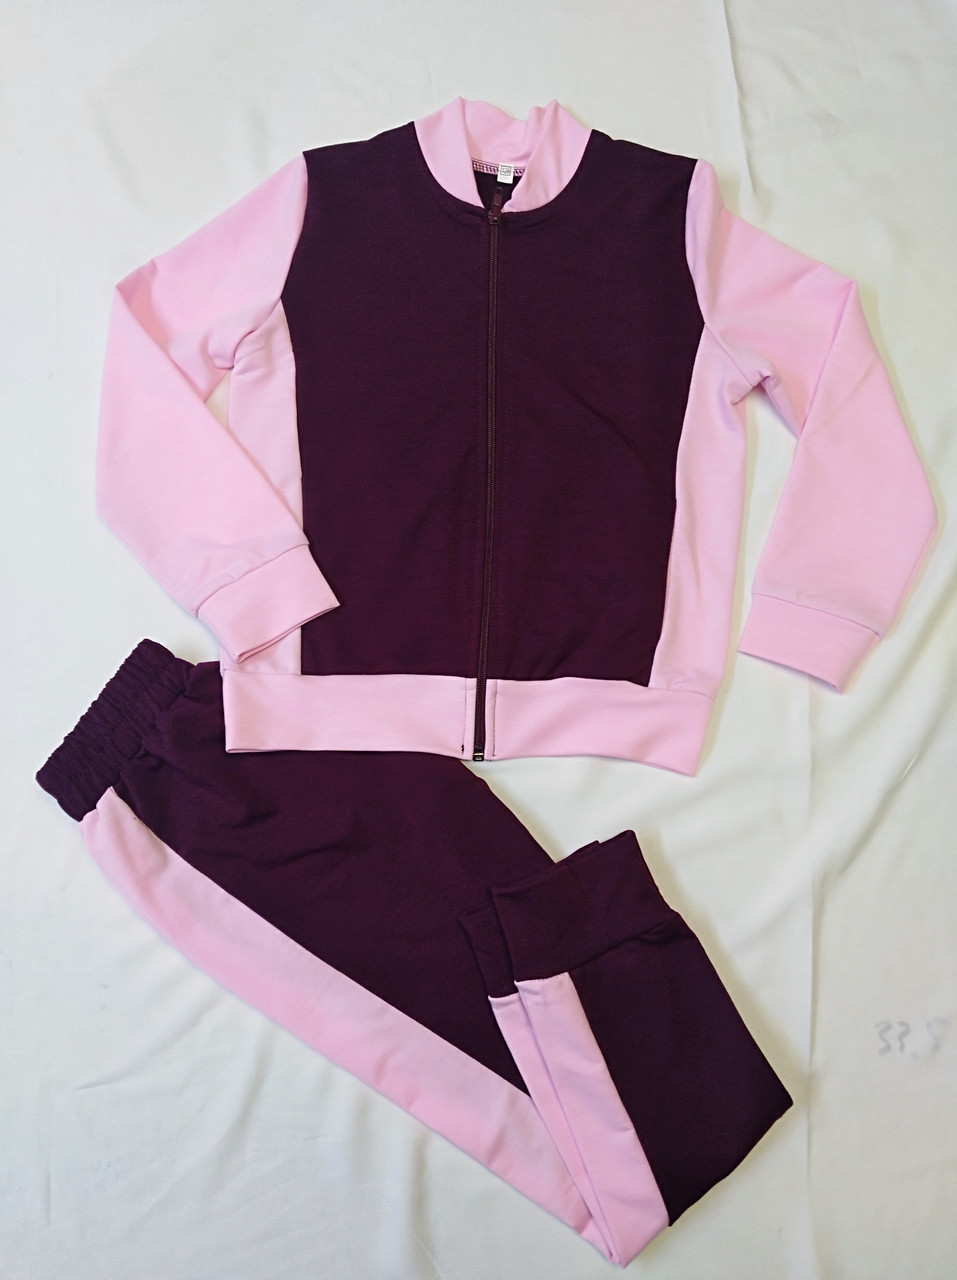 Детский спортивный костюм для девочек. Цвет марсала + розовый, фото 1